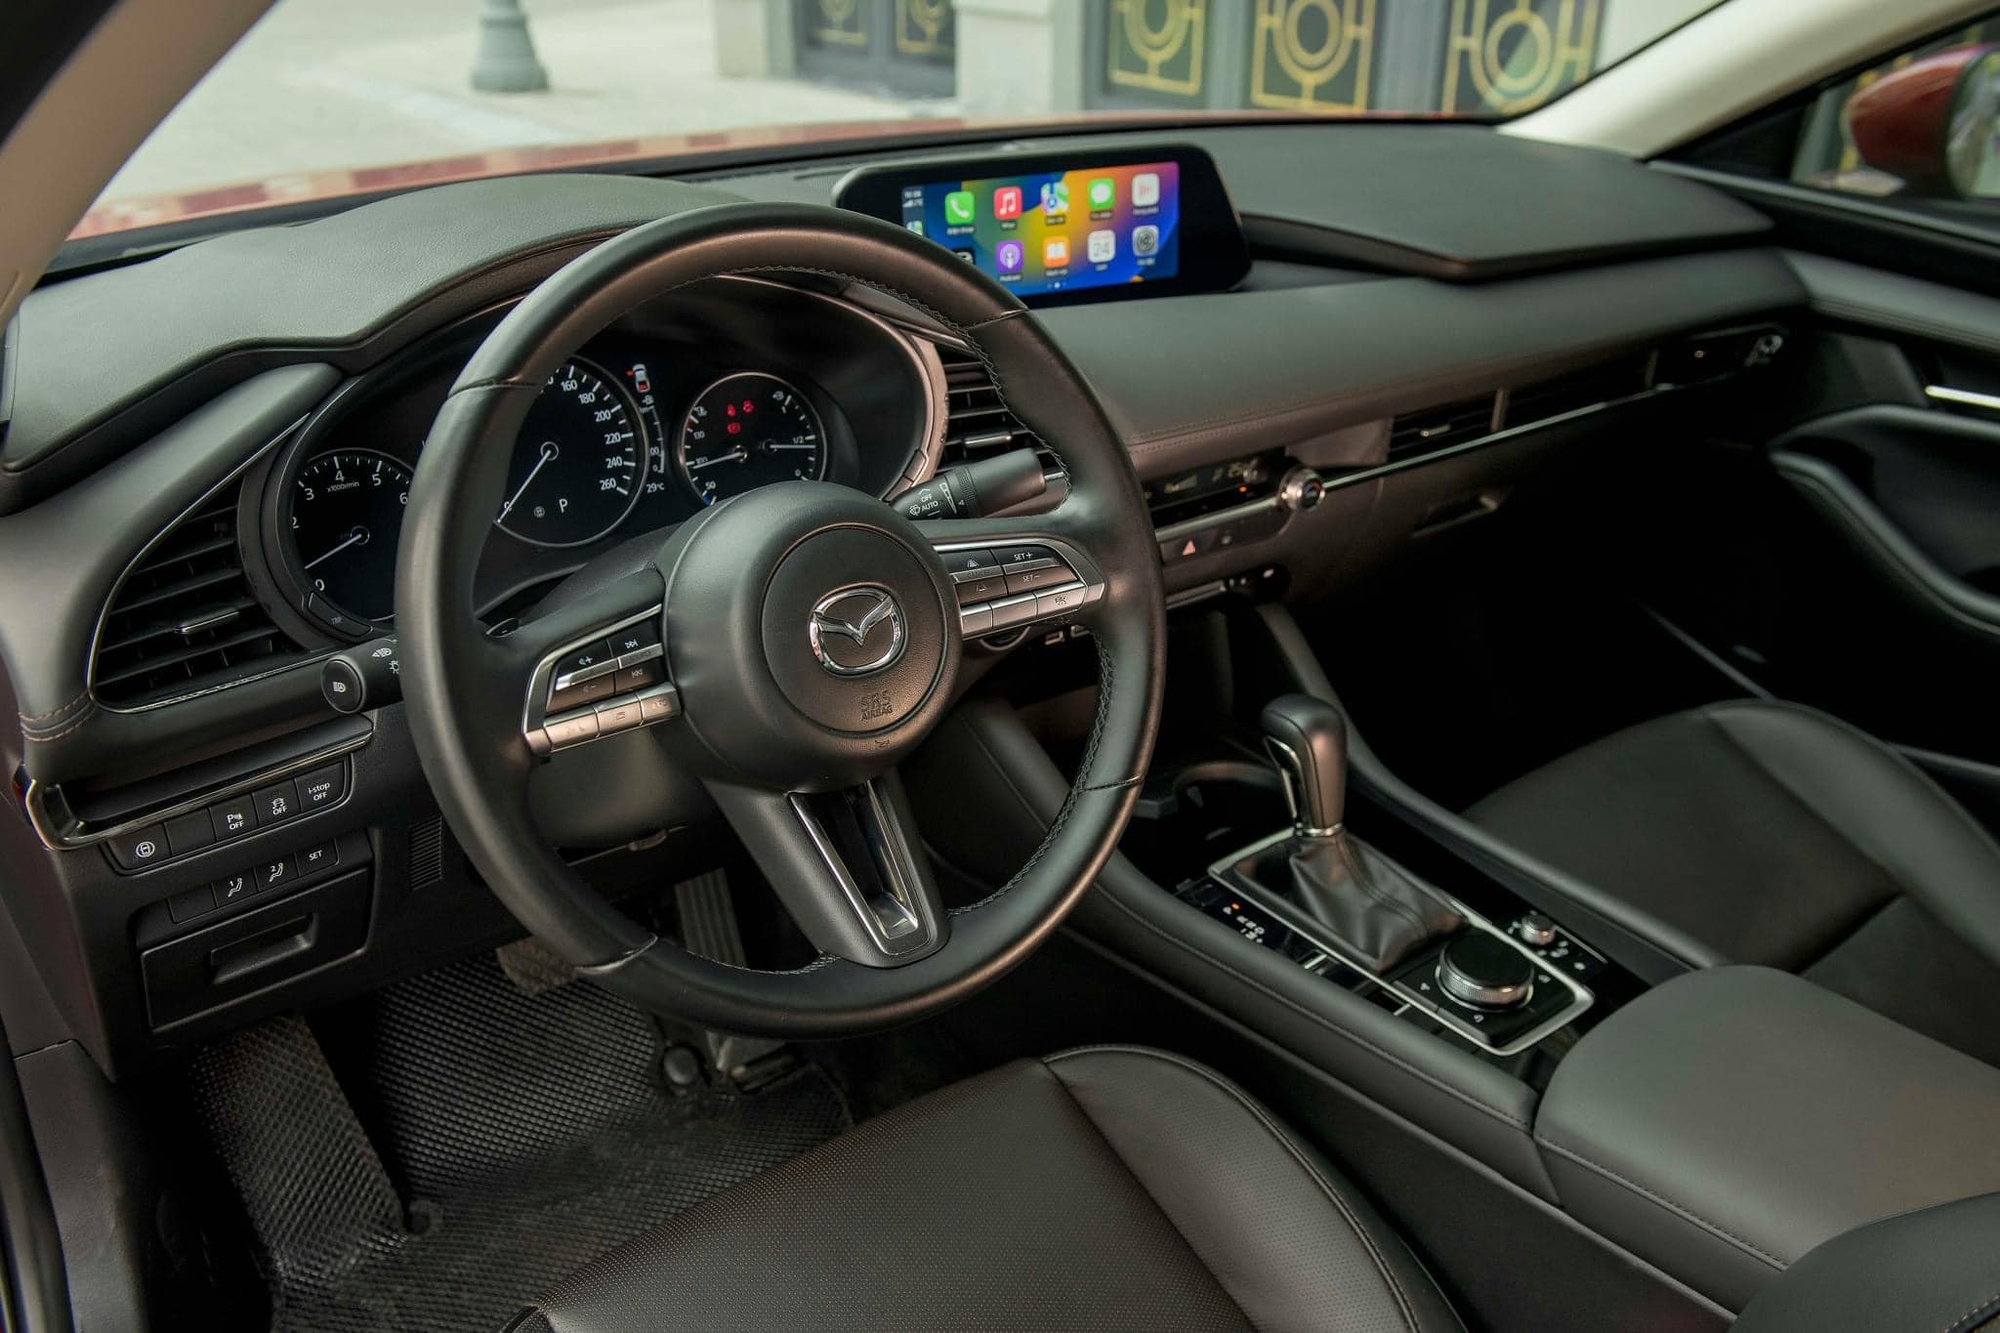 Mazda3 thêm bản mới tại Việt Nam: Giá 739 triệu, bổ sung 4 trang bị nhưng vẫn dùng máy 1.5L - Ảnh 8.